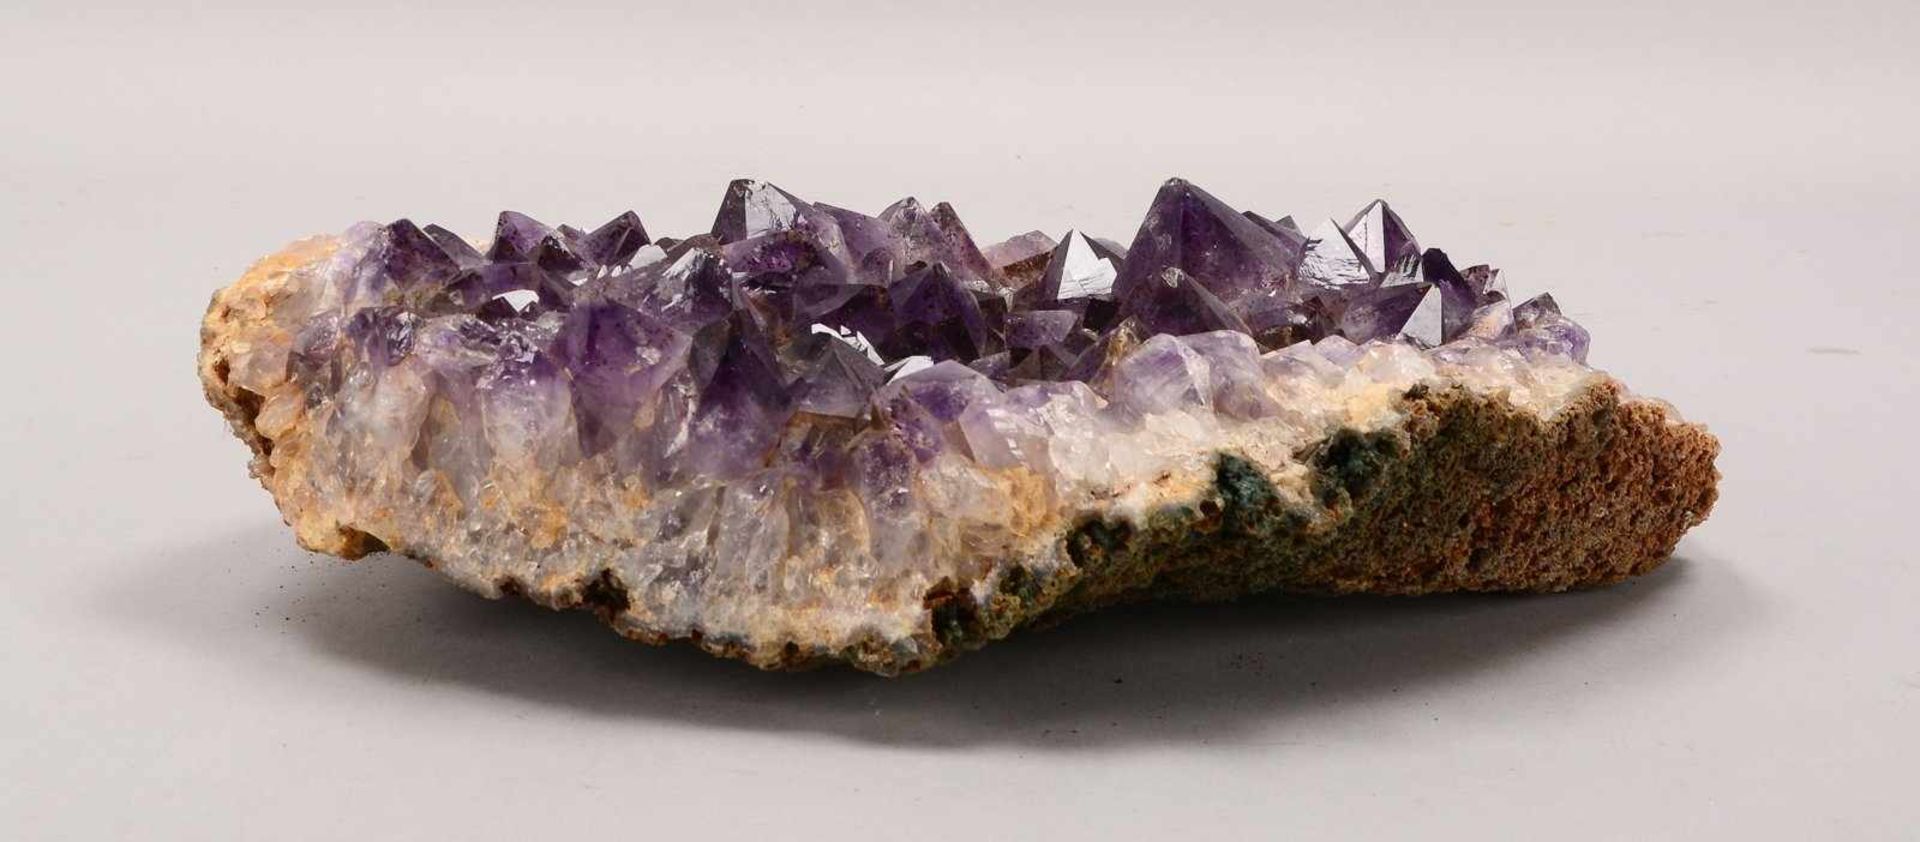 Amethystdruse (Fundort Brasilien), großkristallin, Druse mit schöner Öffnung; Breite 37 cm